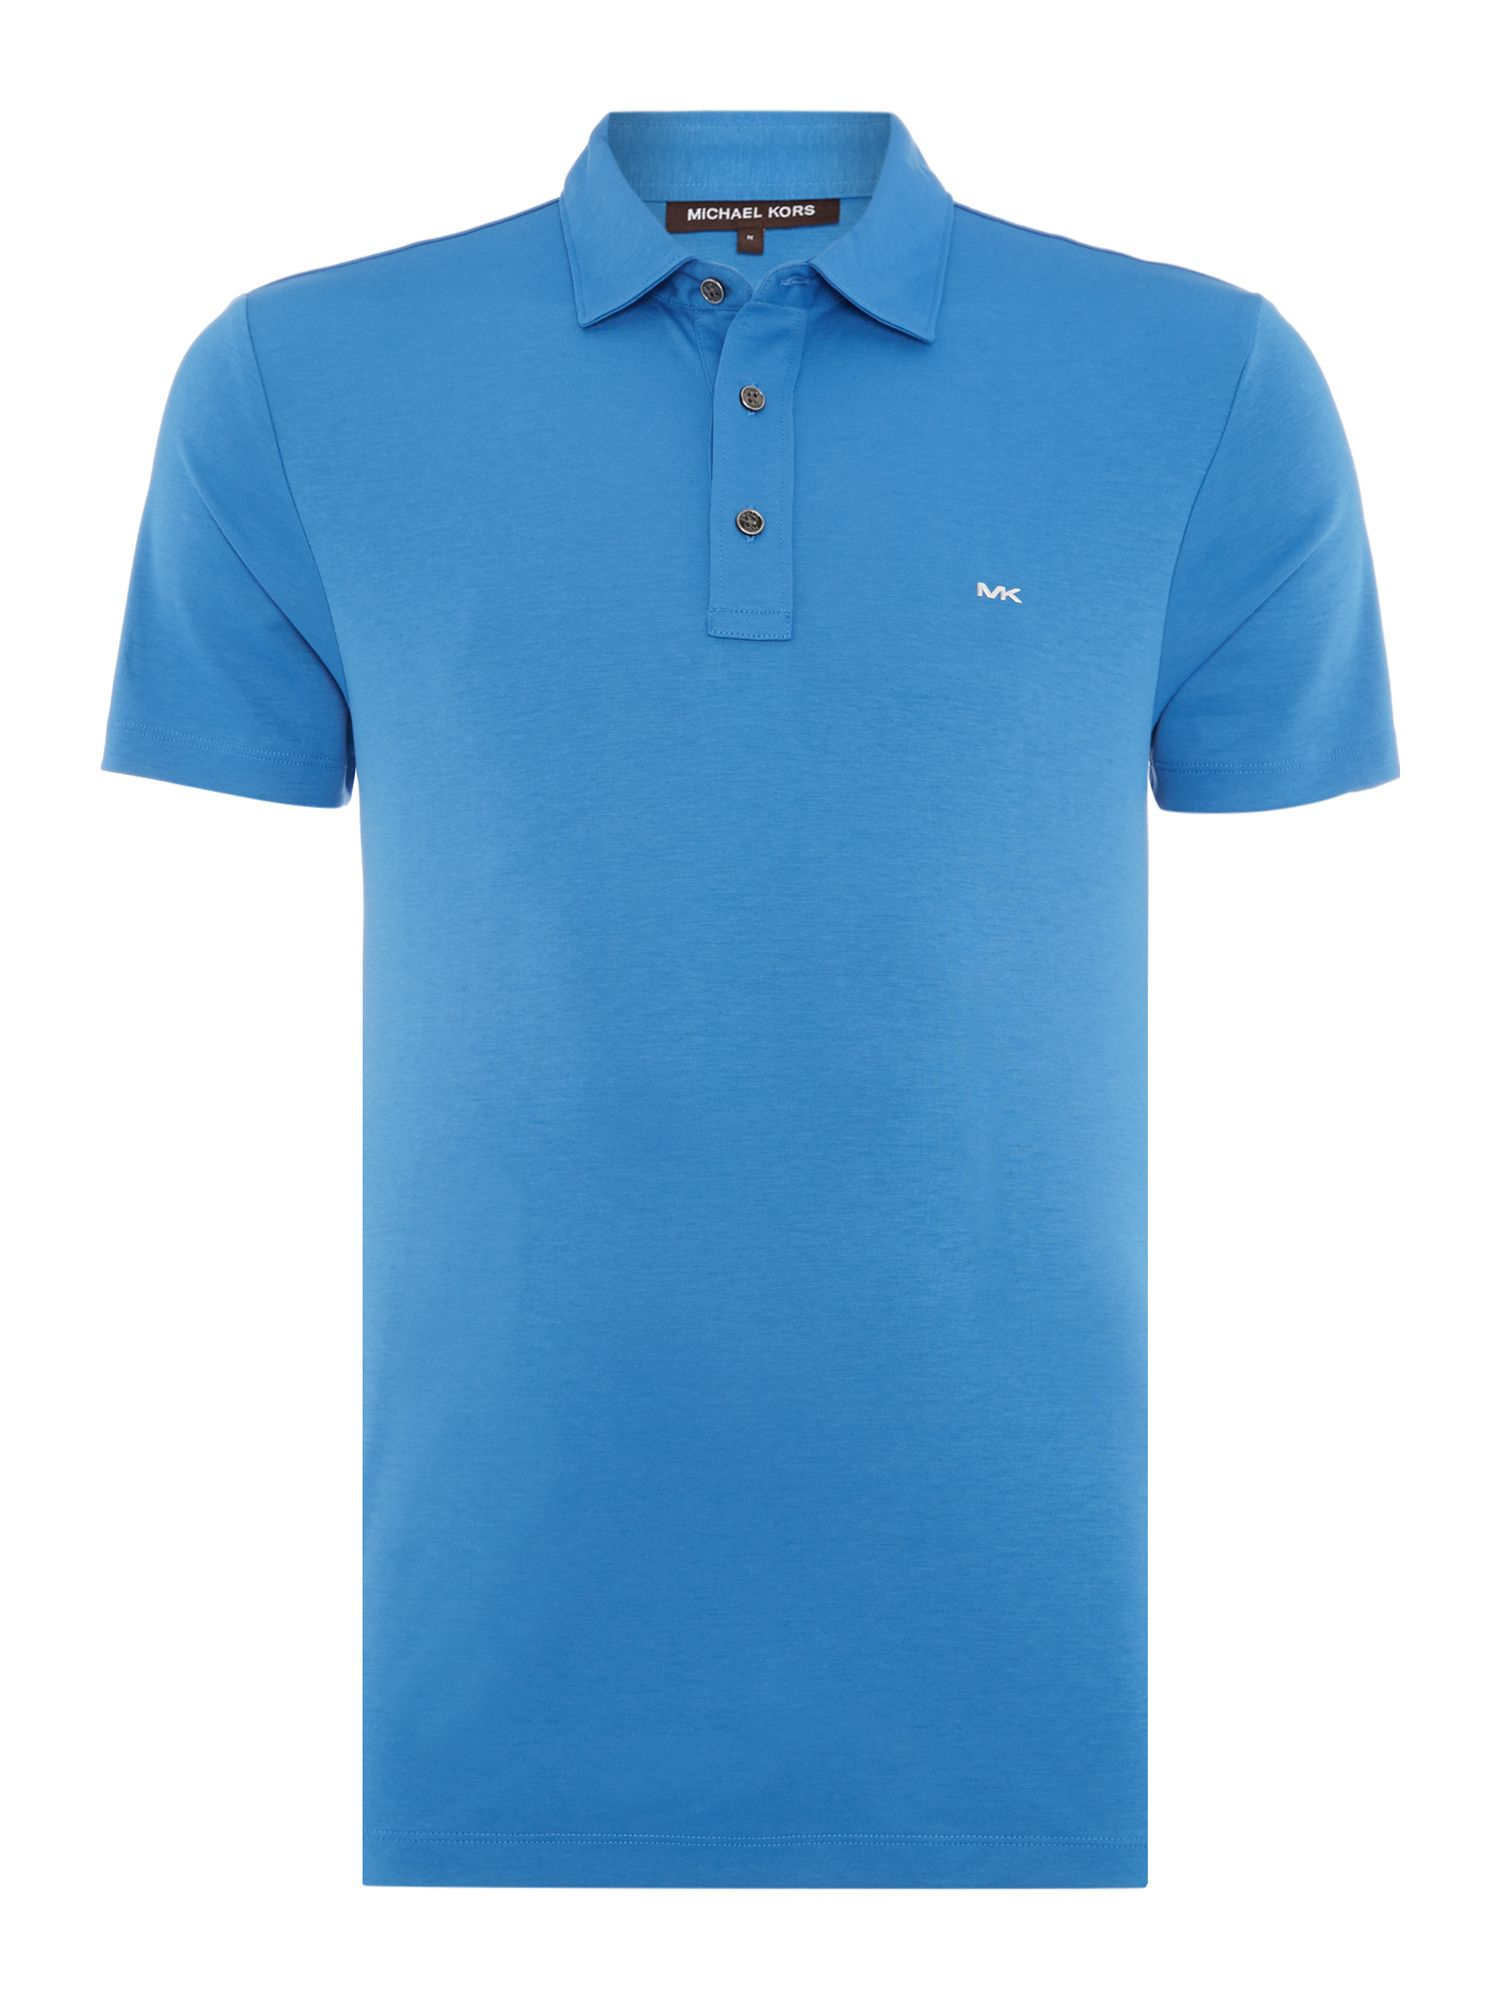 Michael Kors Sleek Mk Slim Fit Logo Polo Shirt in Blue for Men | Lyst